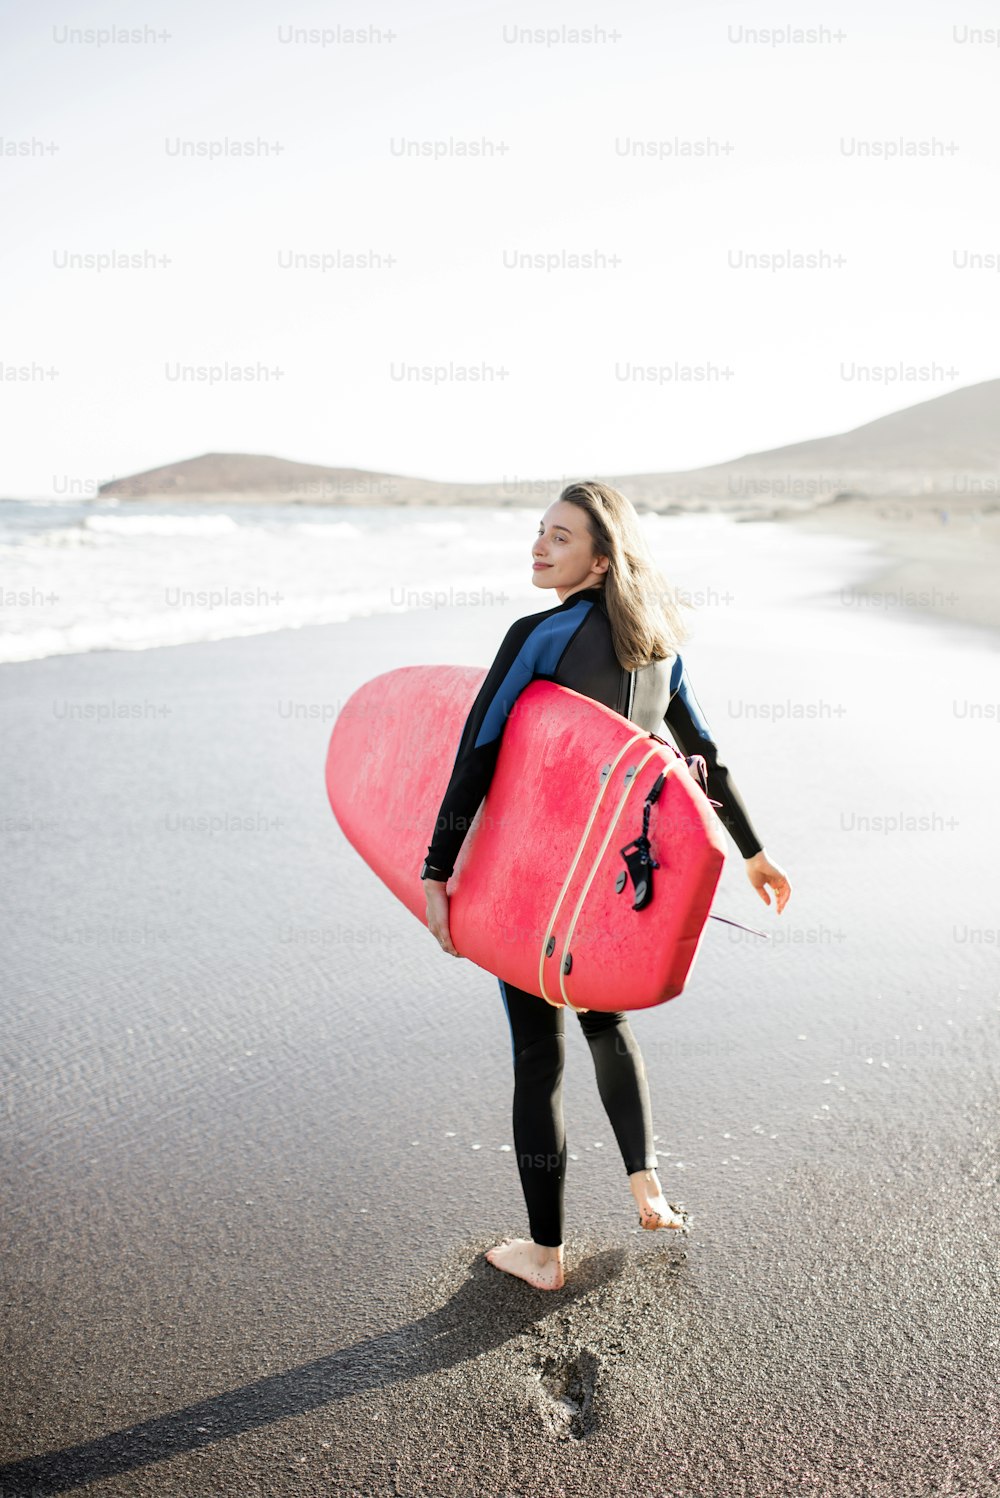 Mujer joven en traje de neopreno caminando con tabla de surf, dejando huellas en la arena detrás, vista desde la parte trasera. Concepto de deporte acuático y estilo de vida activo